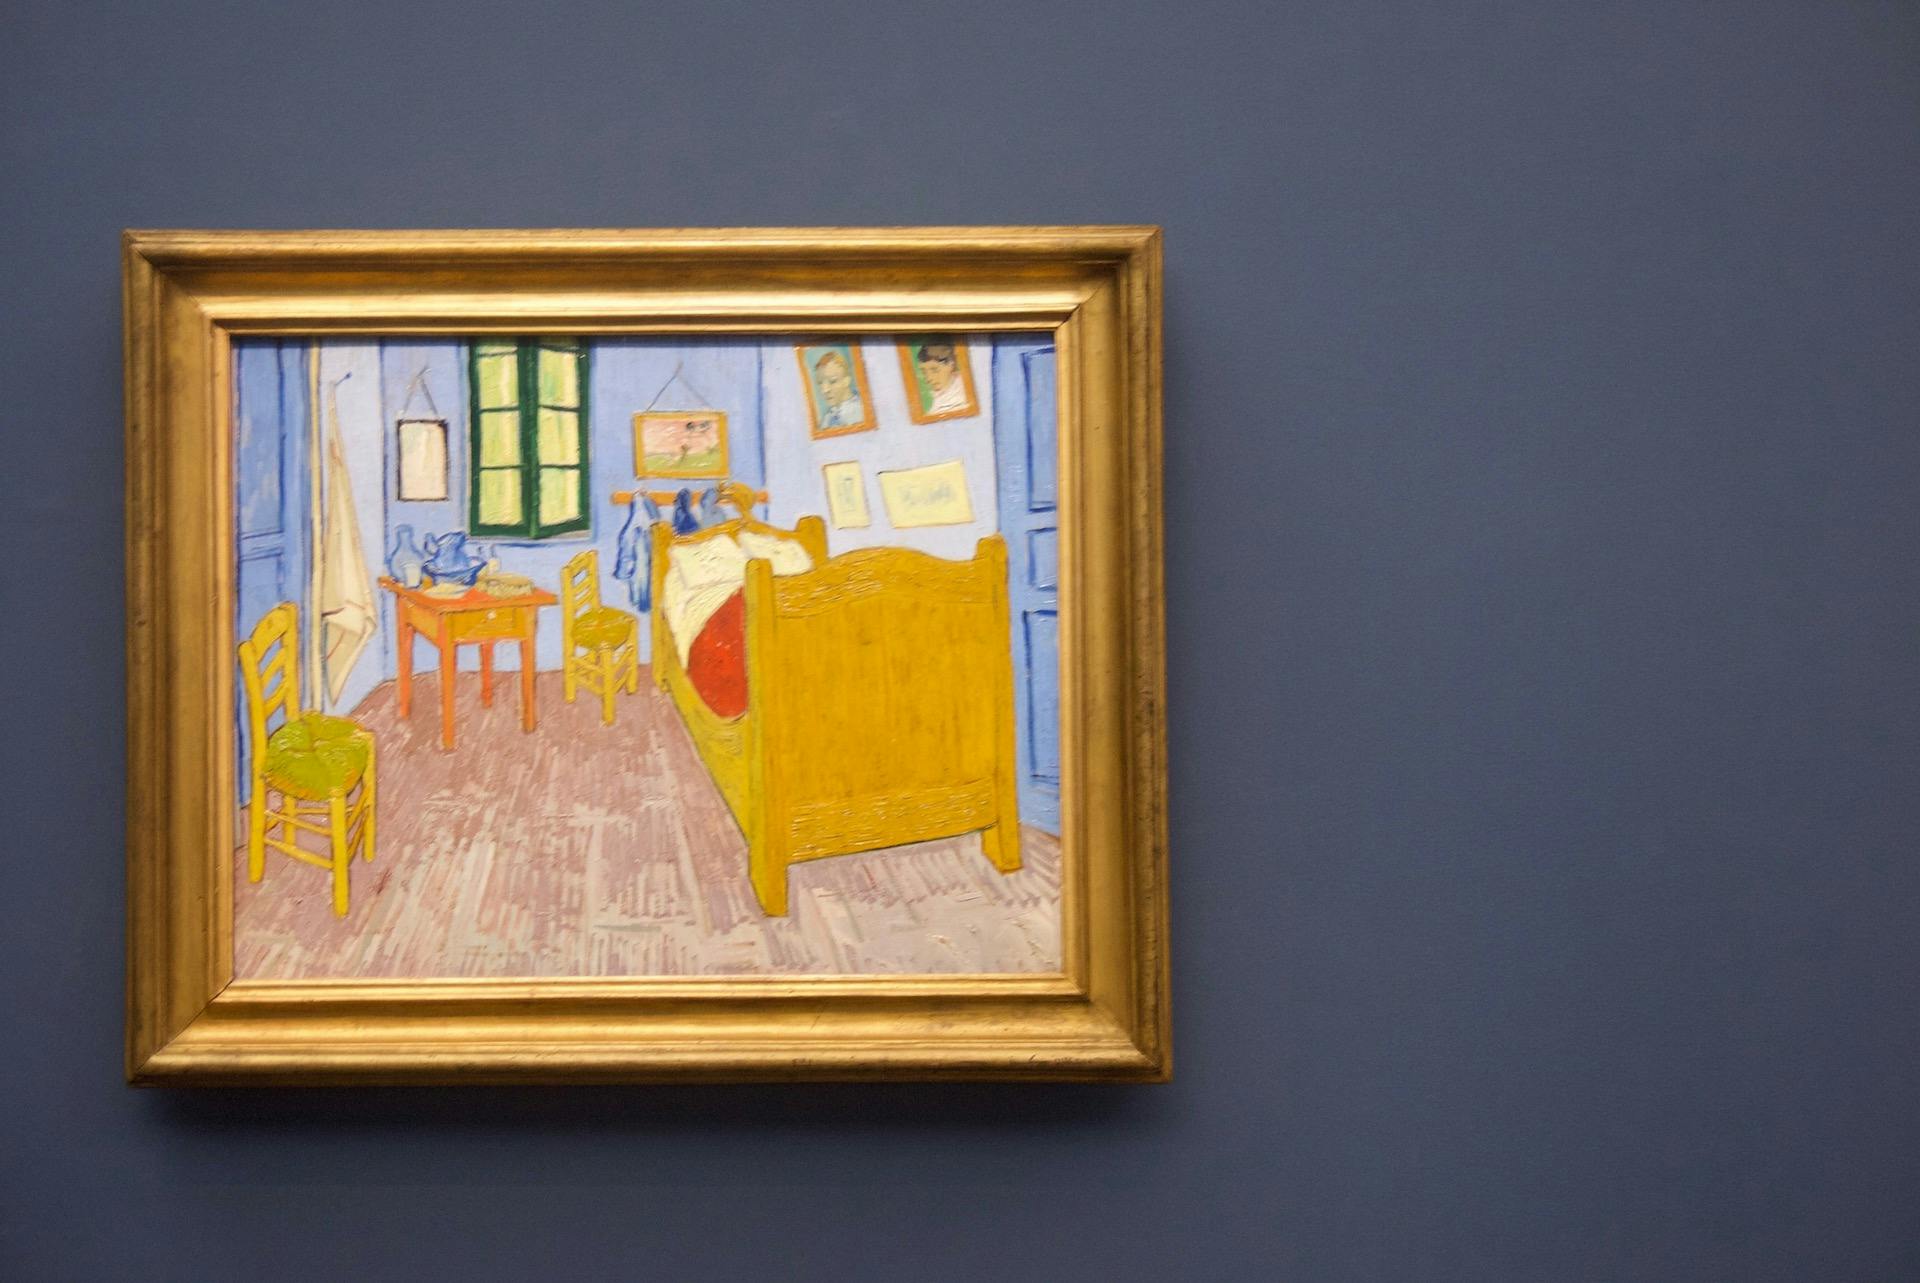 Zwiedzanie Musée d'Orsay z przewodnikiem w małej grupie 6 osób